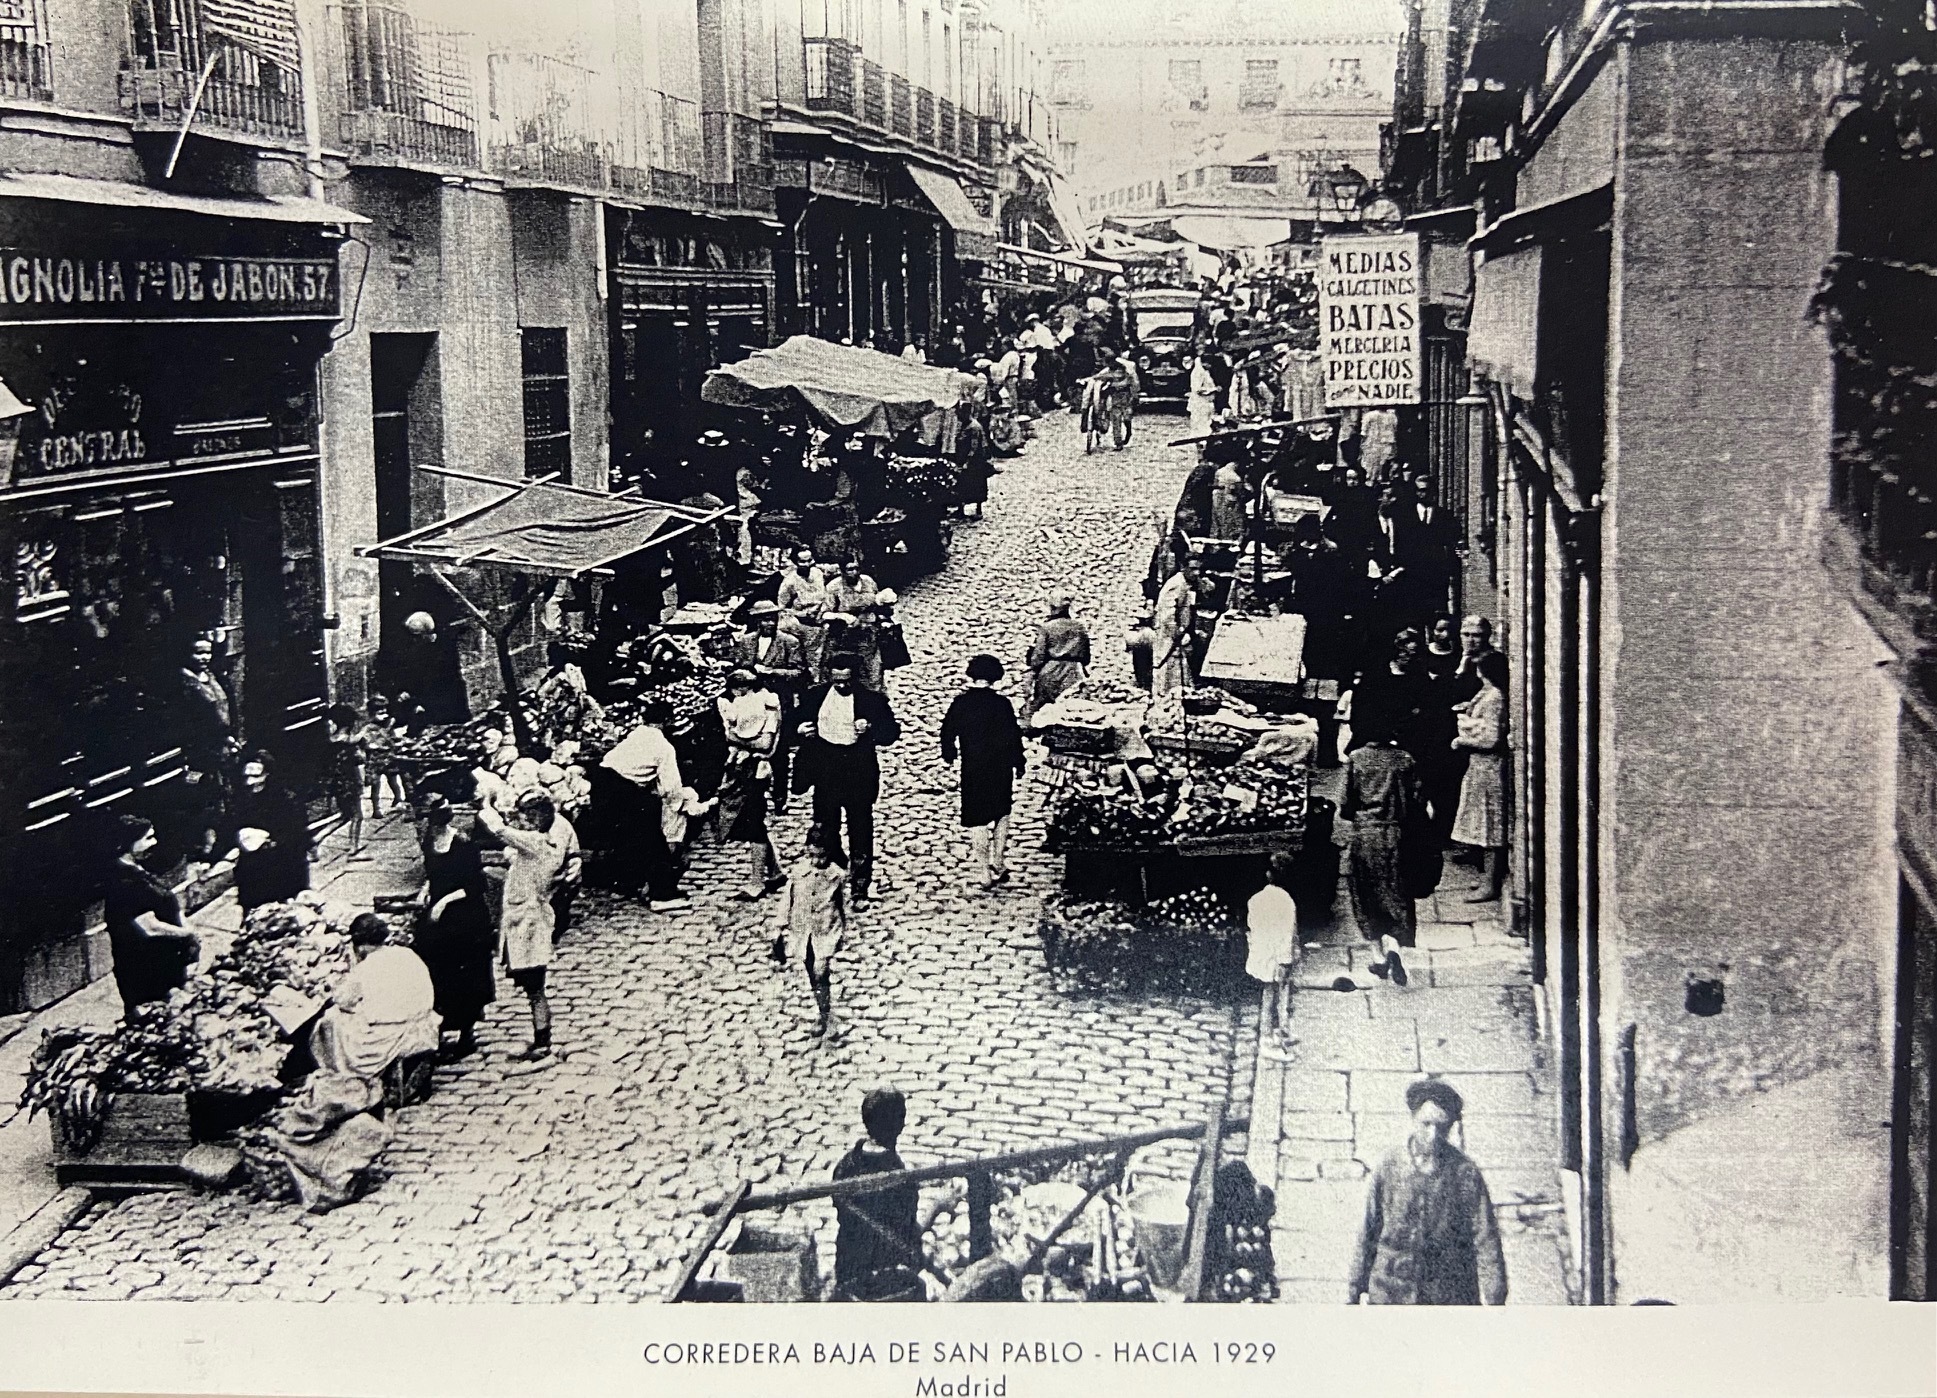 La Corredera Baja de San Pablo, en una imagen tomada en torno a 1929.